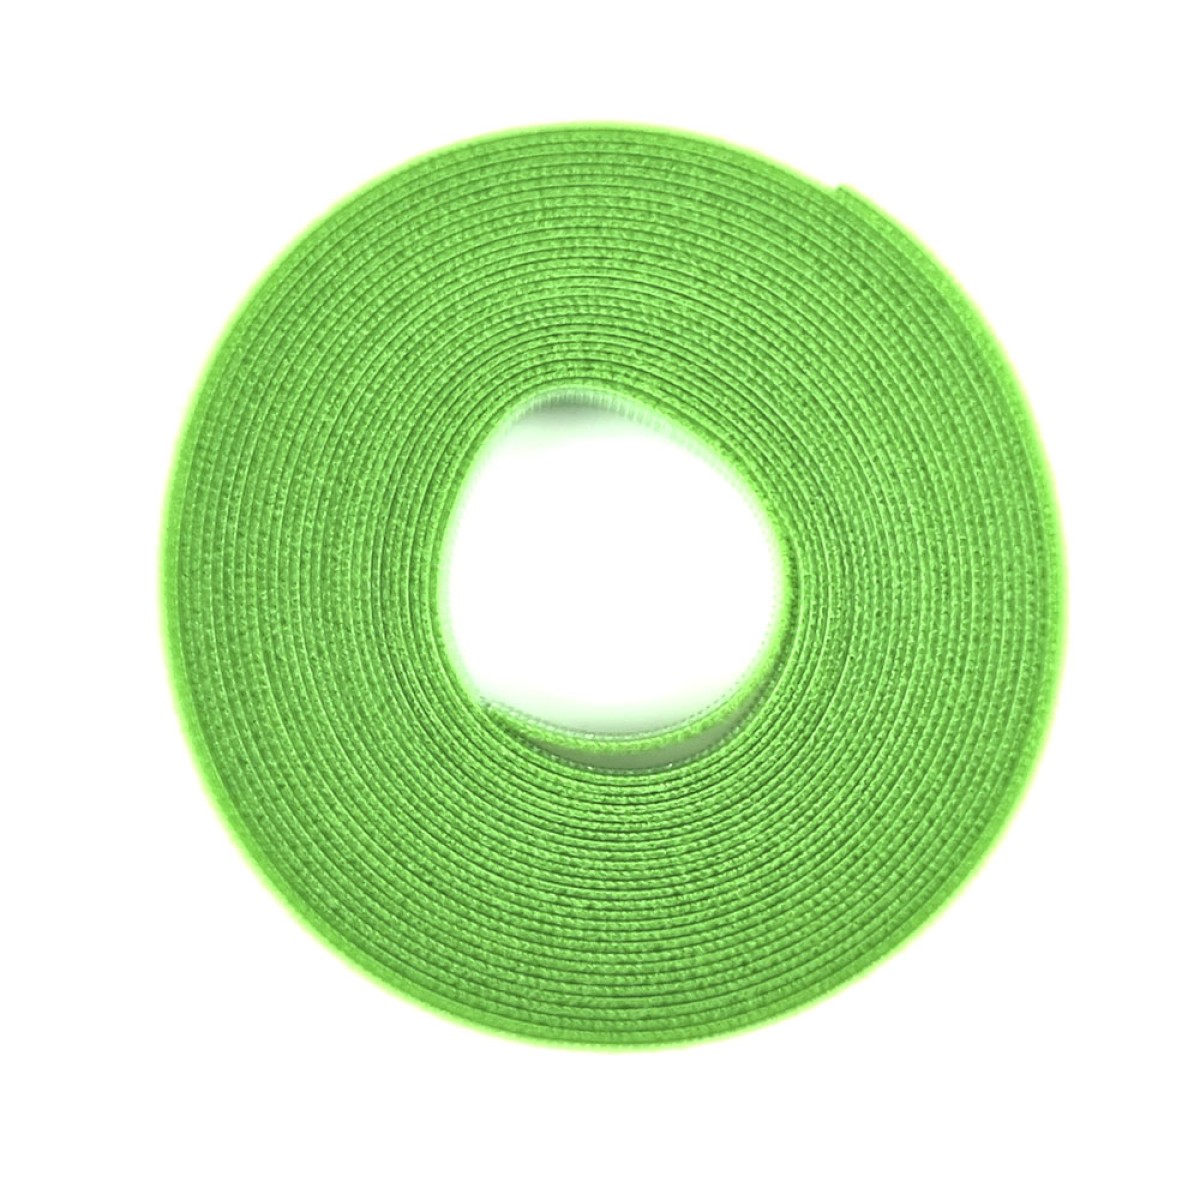 Двостороння стяжка-липучка, 10мм x 5м, моток, зелена, EServer 256_256.jpg